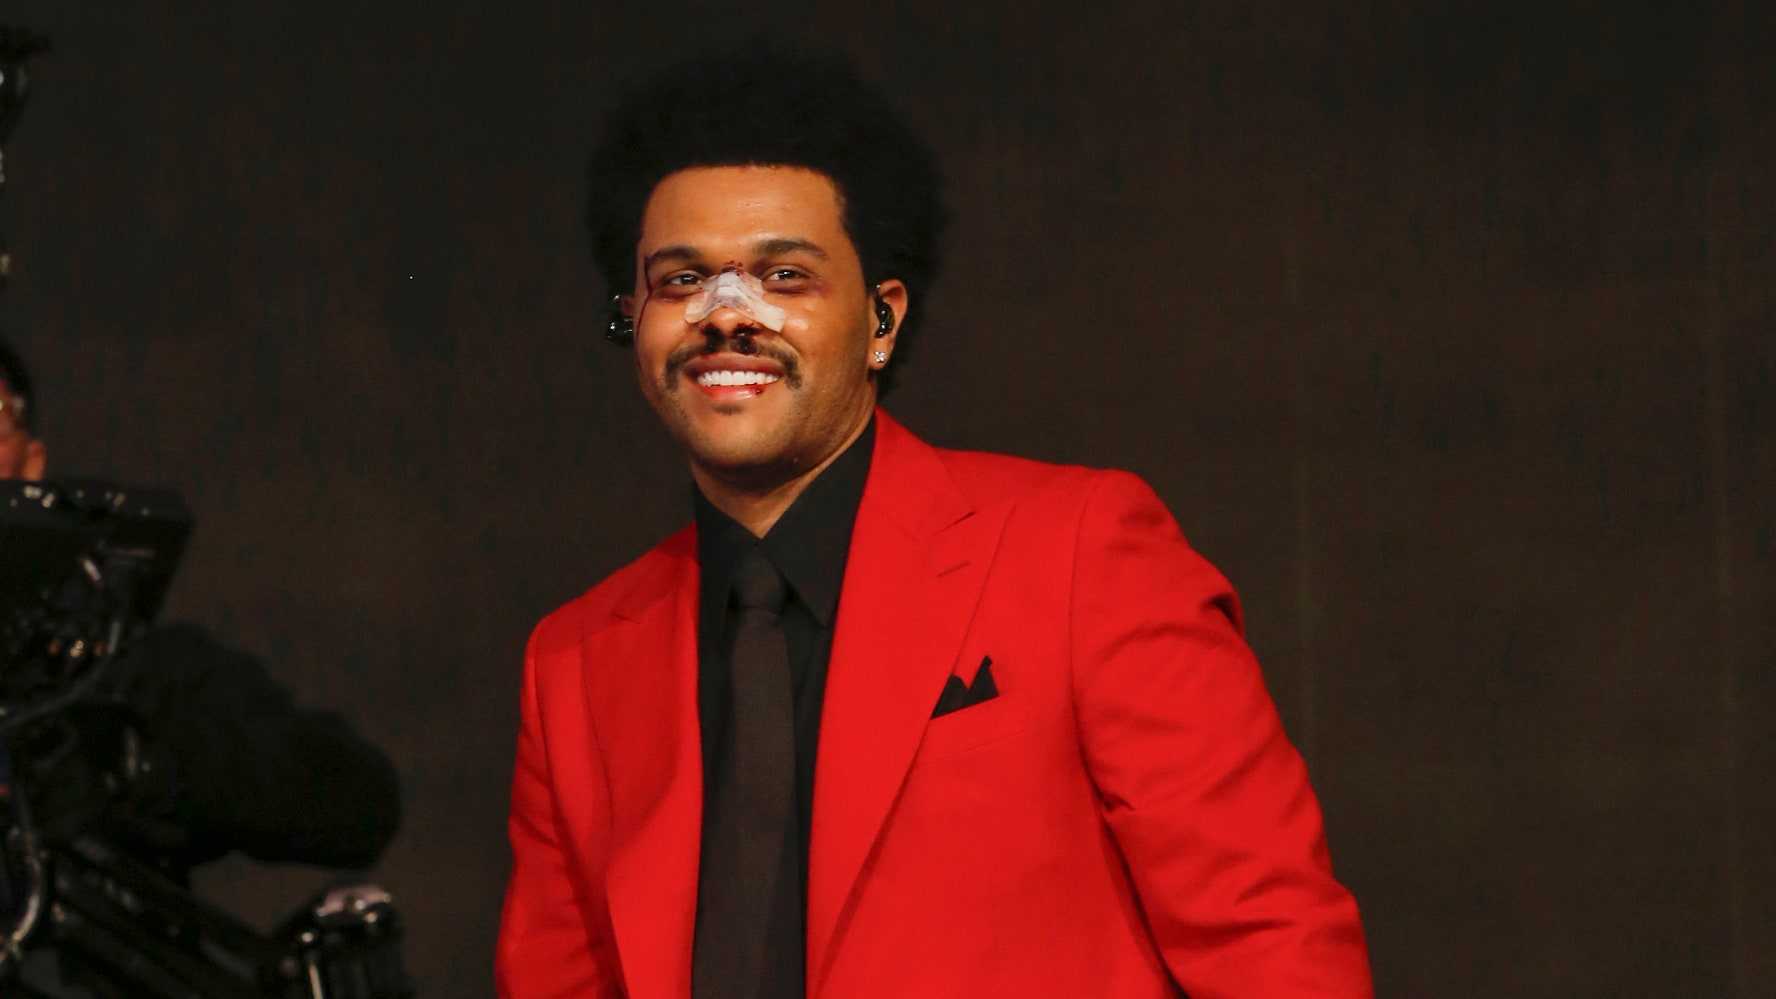 Харизматичная фигура The Weeknd стала неотъемлемым атрибутом его образа